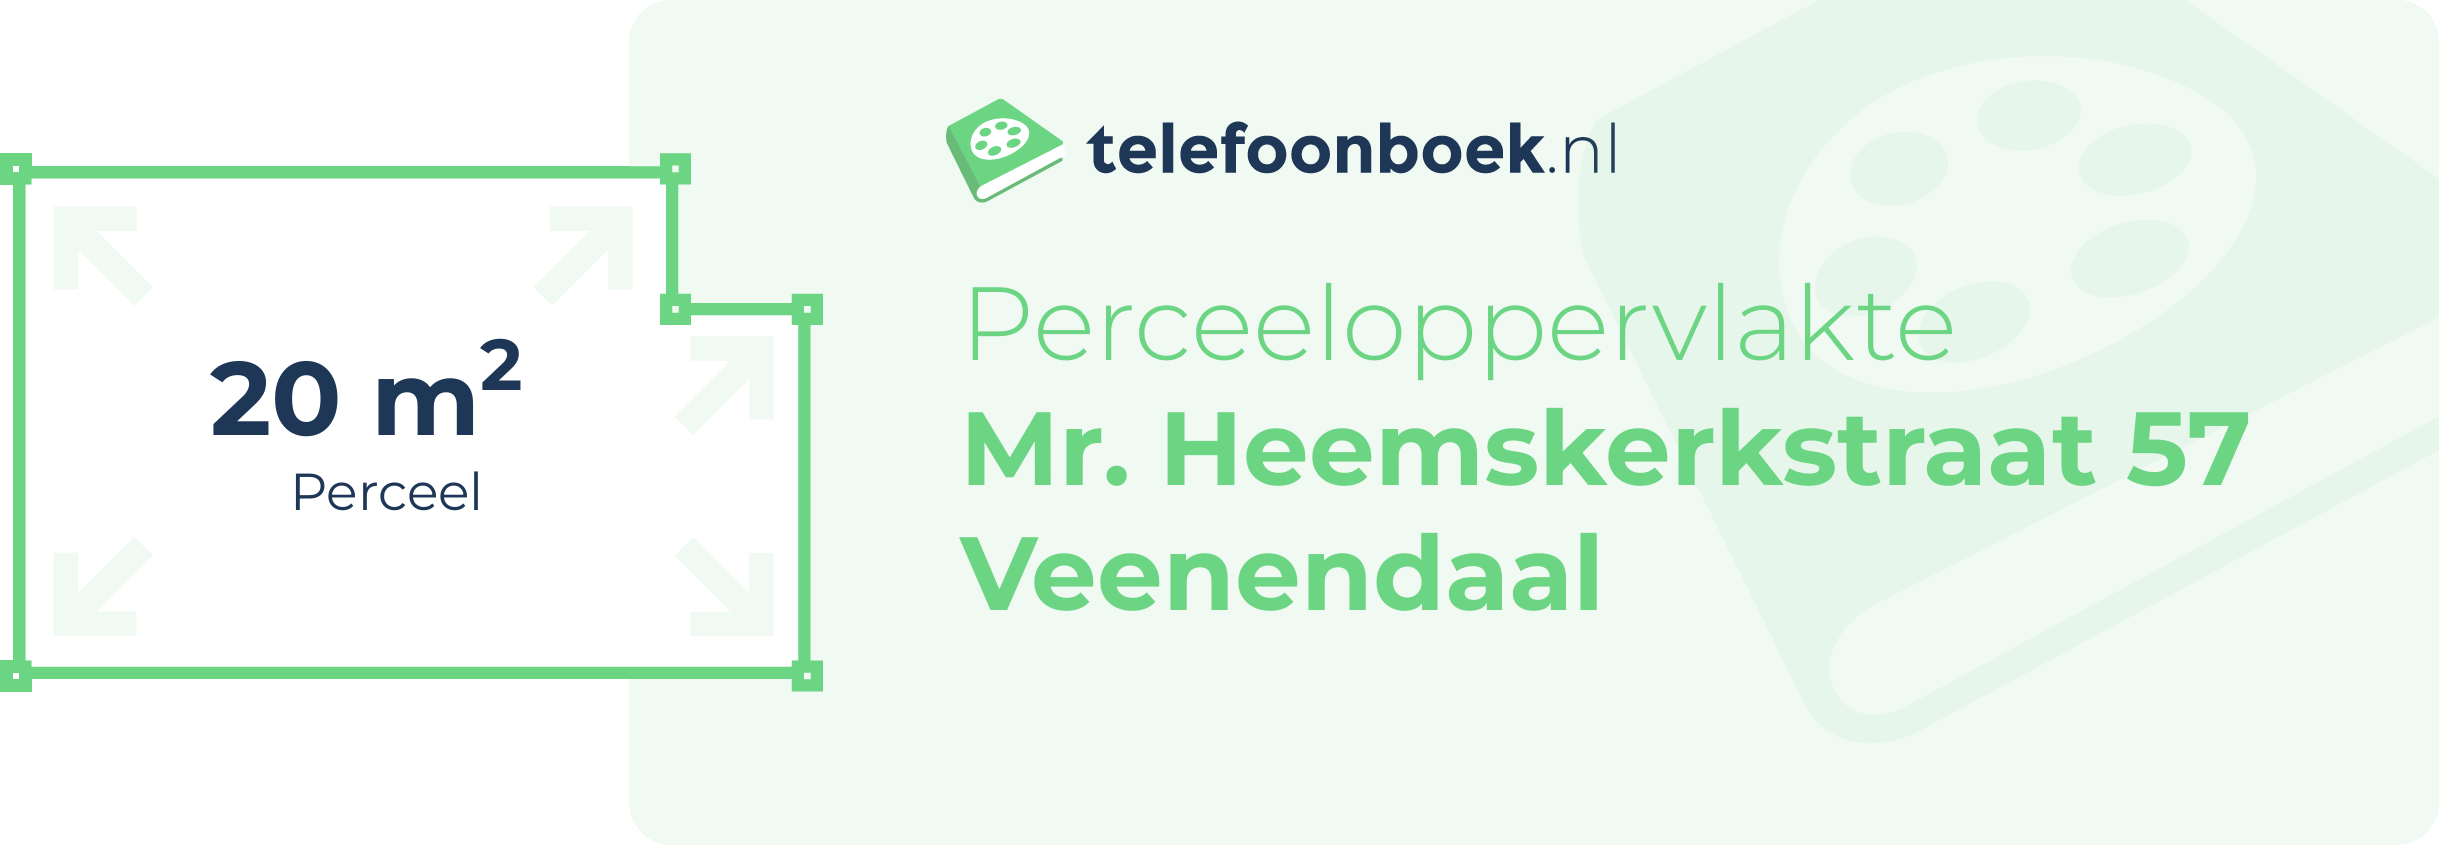 Perceeloppervlakte Mr. Heemskerkstraat 57 Veenendaal